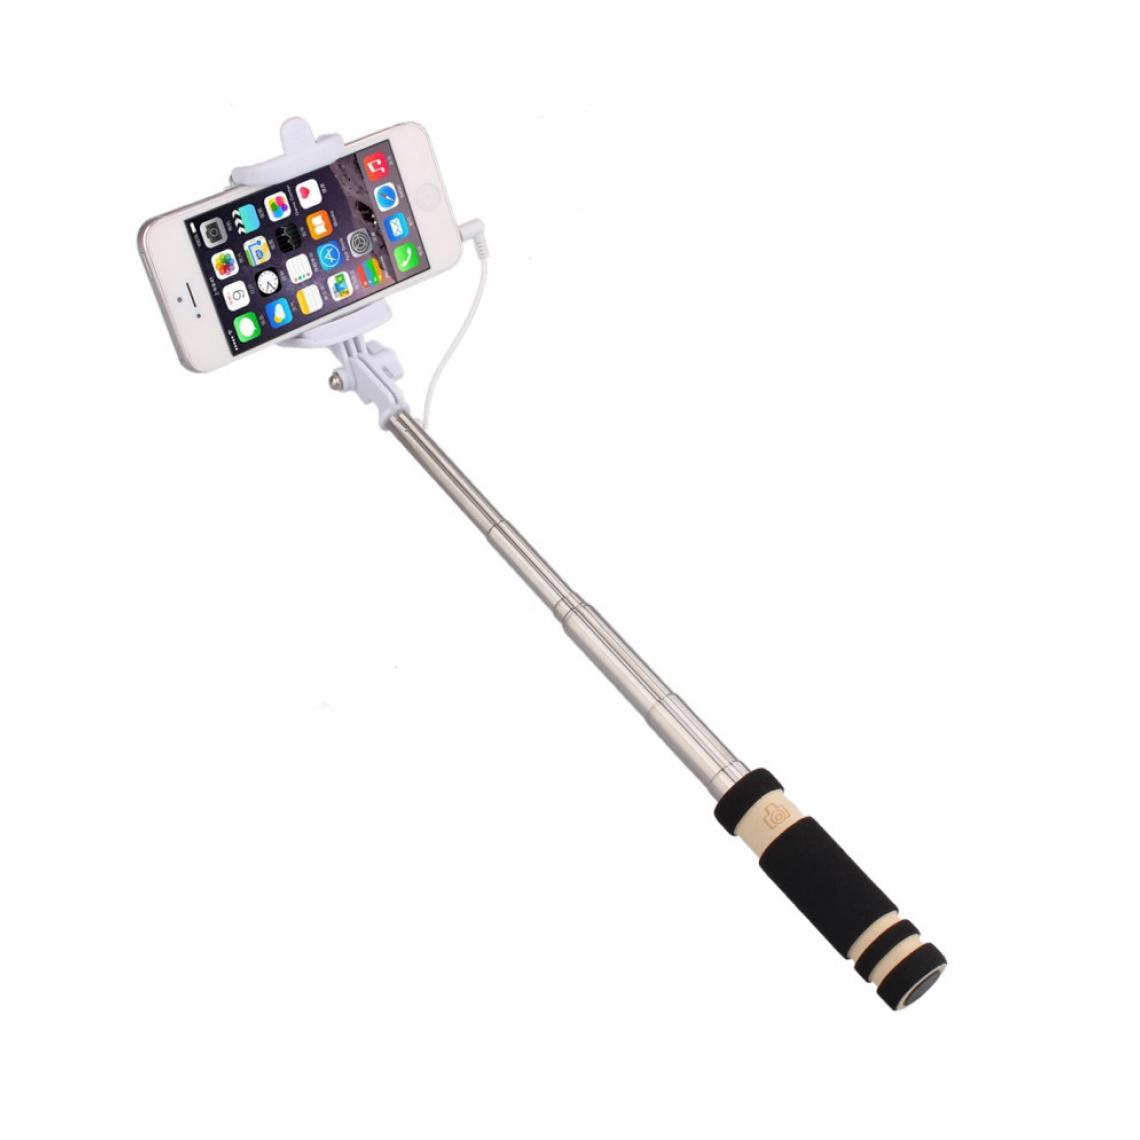 Shot - Mini Perche Selfie pour HUAWEI P40 Smartphone avec Cable Jack Selfie Stick Android IOS Reglable Bouton Photo (NOIR) - Autres accessoires smartphone